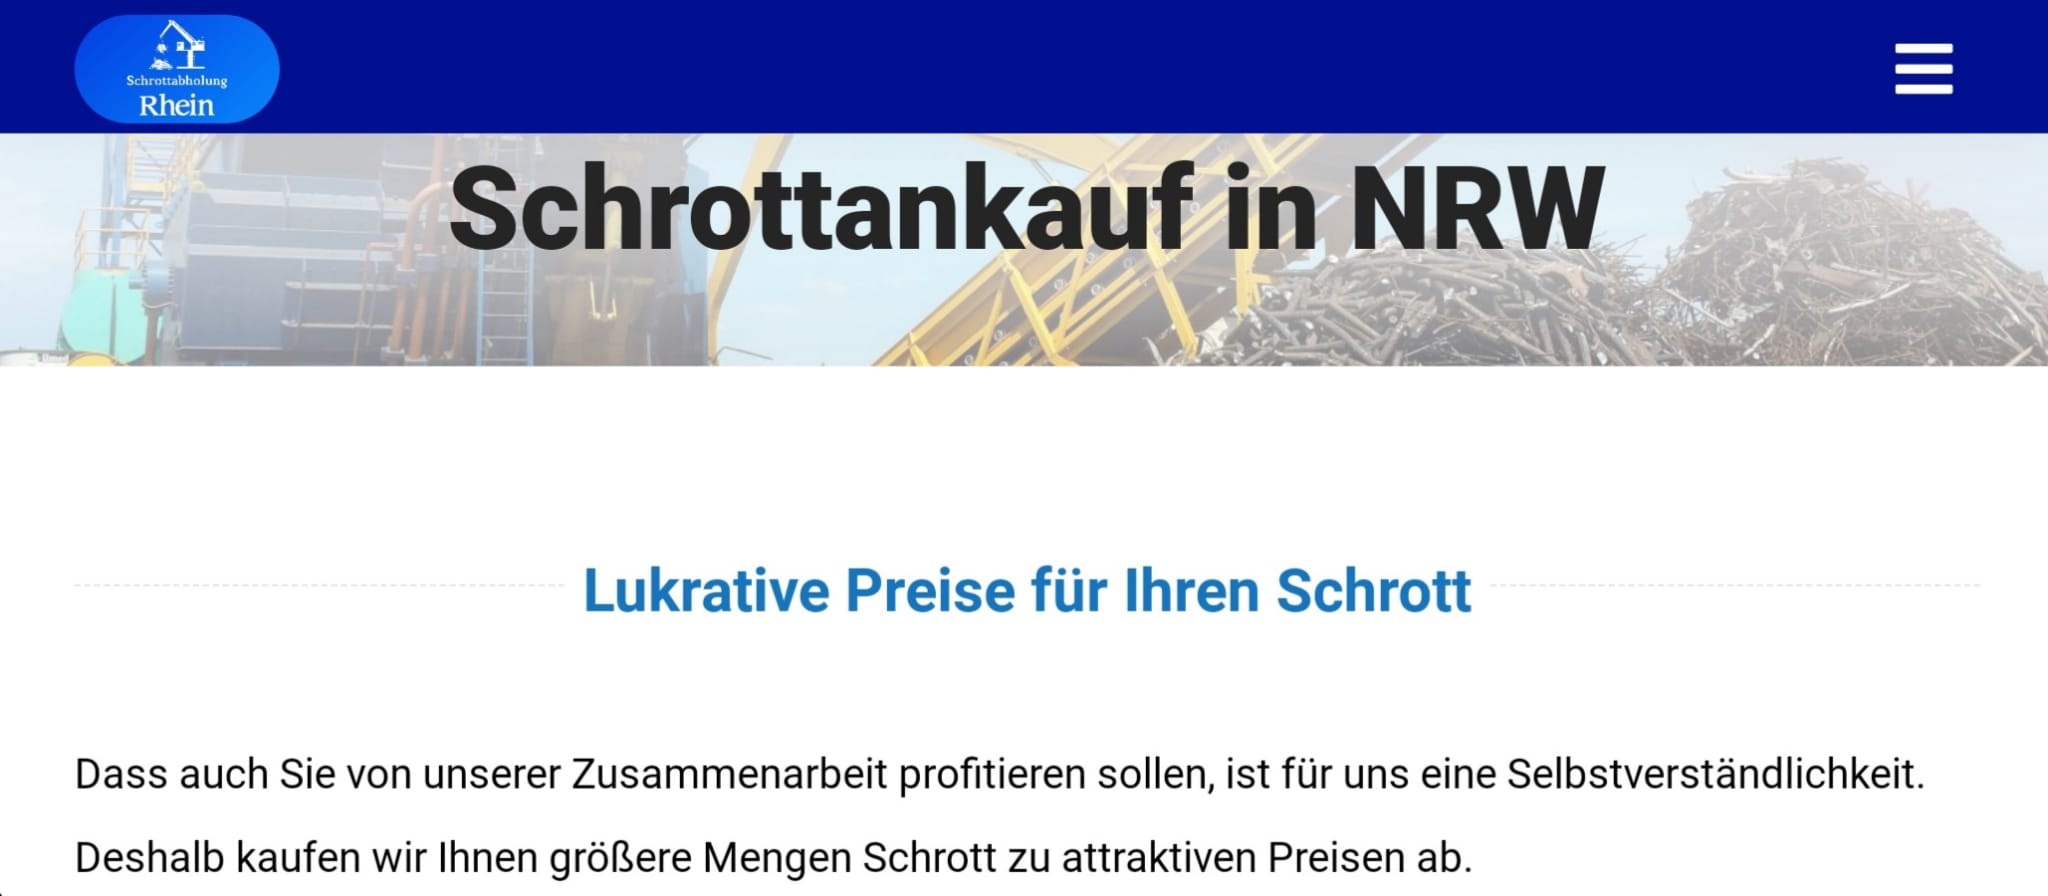 Schrottankauf NRW- Ihr zuverlässiger Schrotthändler in Nordrhein-Westfalen